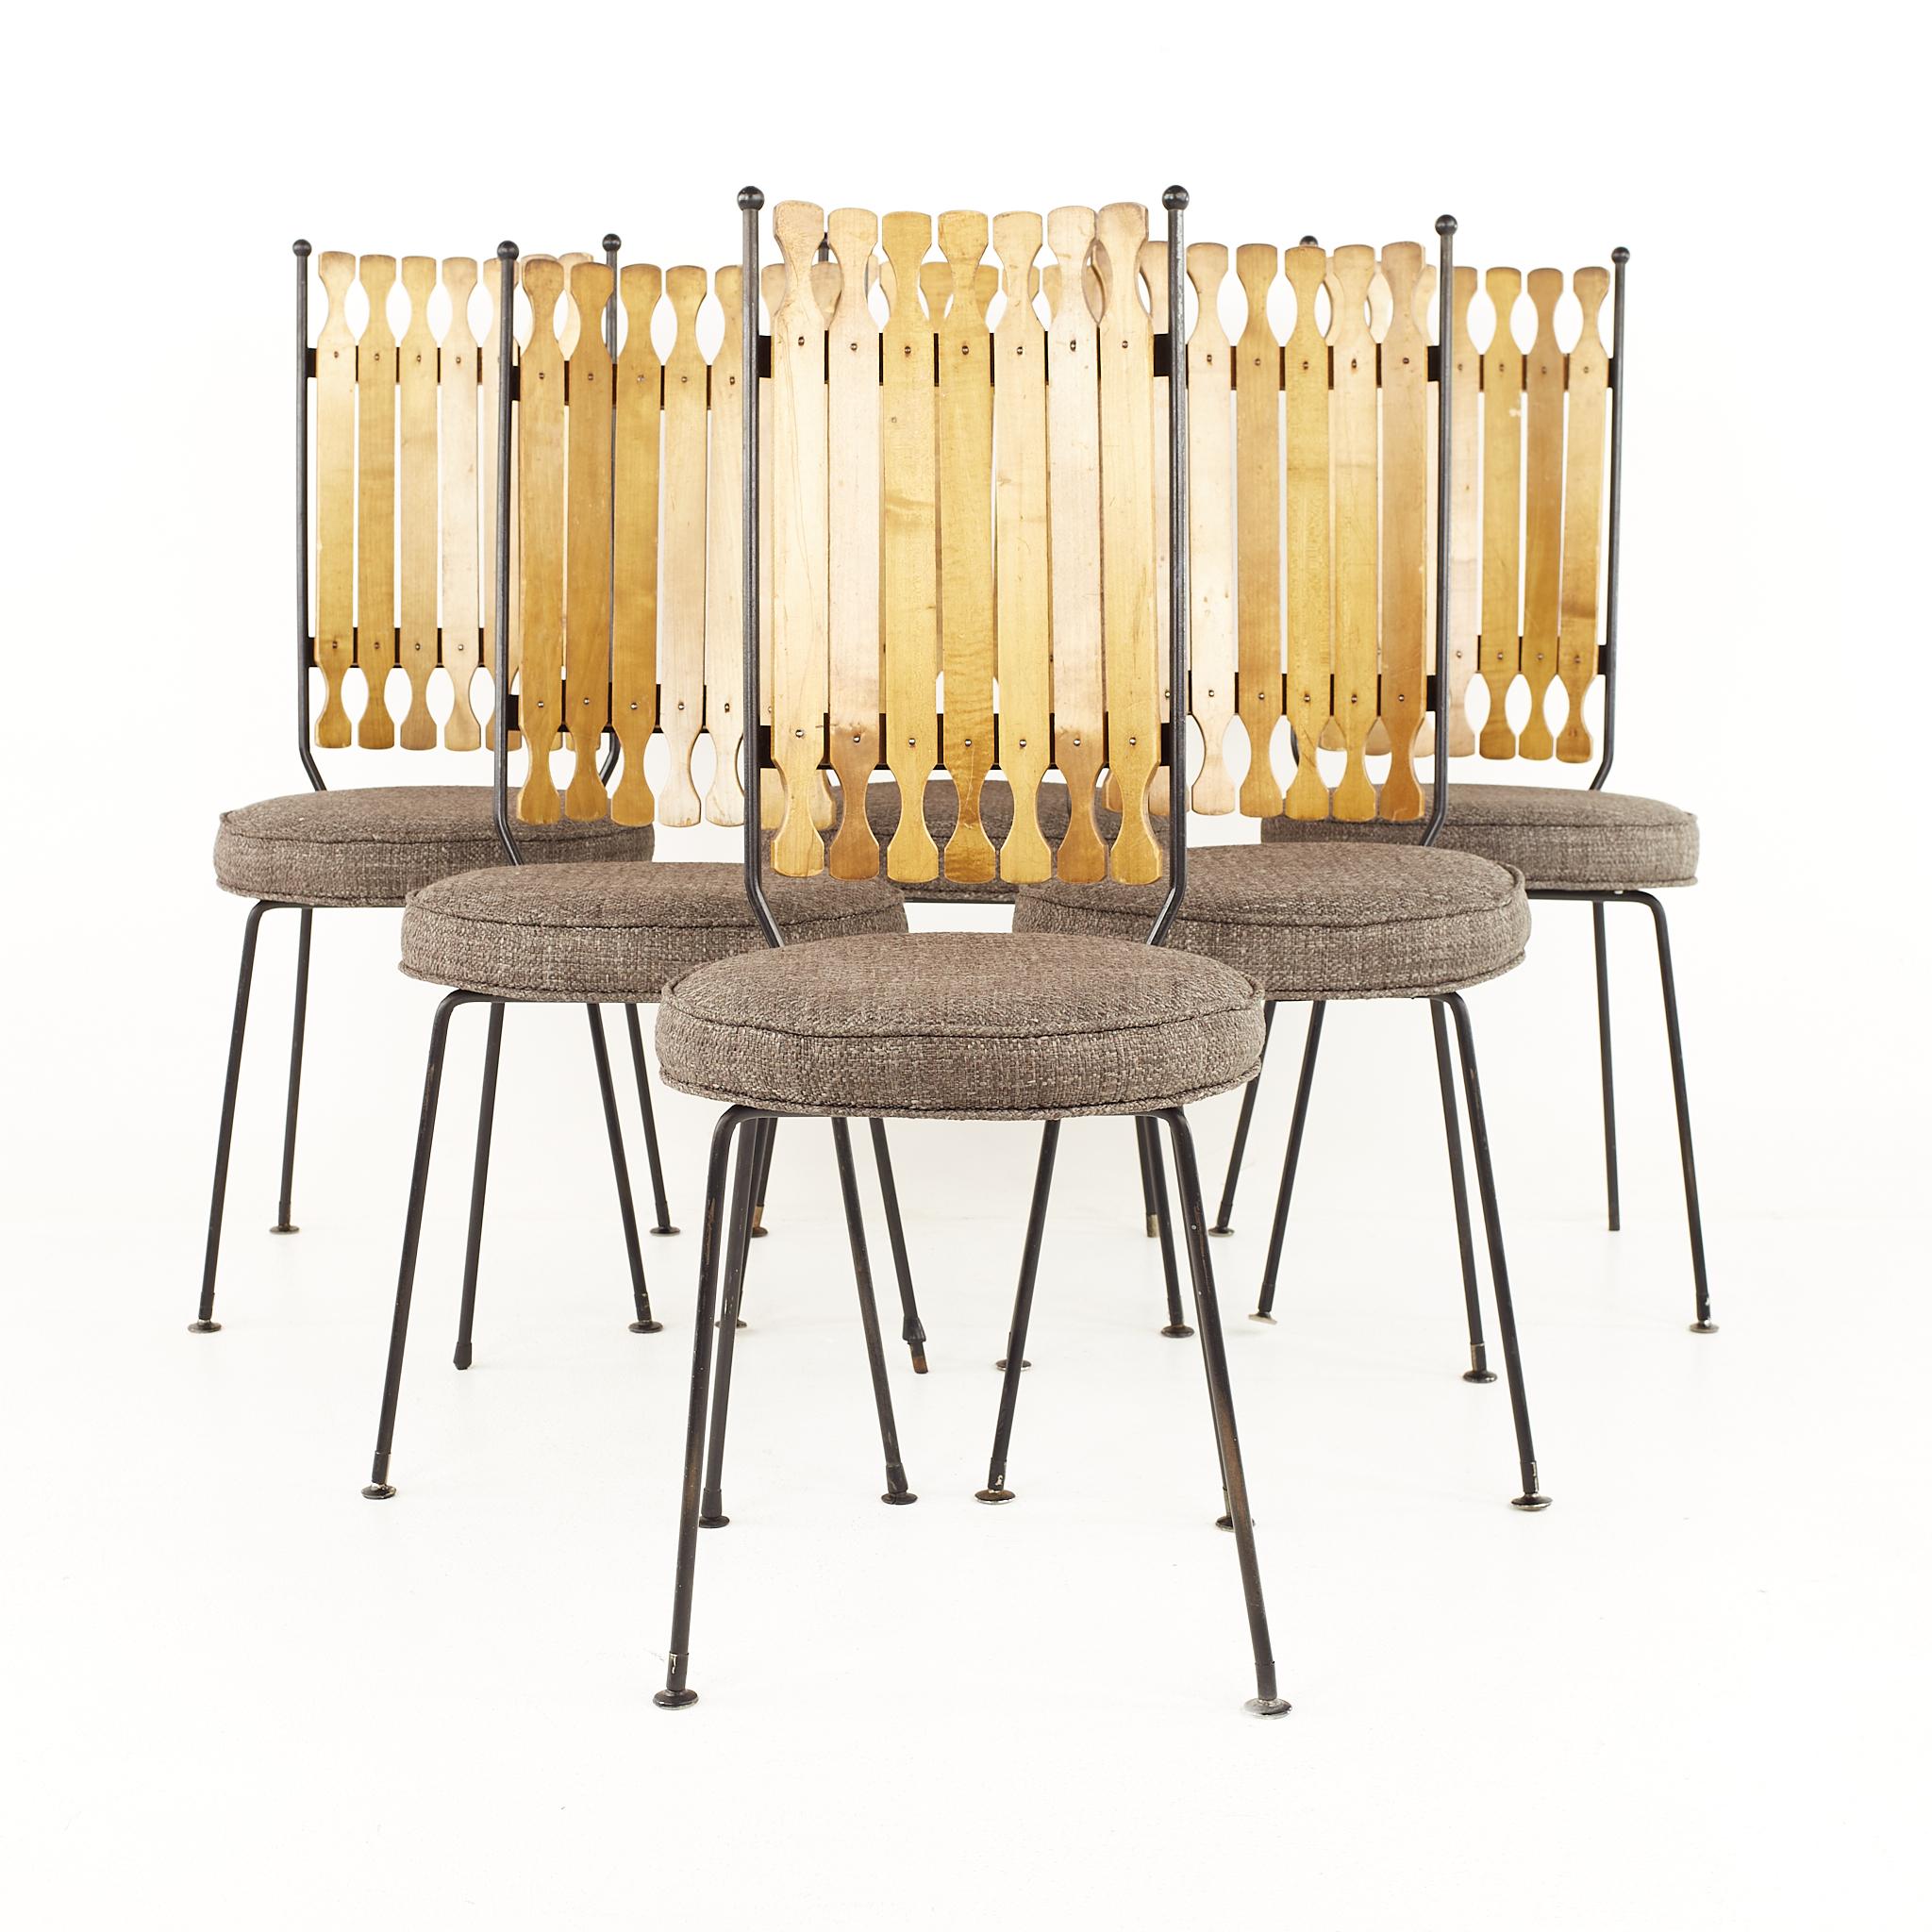 Arthur Umanoff for Shaver Howard mid-century high back dining chairs - Set of 6

Chaque chaise mesure : 16.25 largeur x 19 profondeur x 40.25 hauteur, avec une hauteur d'assise de 19 pouces 

Tous les meubles peuvent être obtenus dans ce que